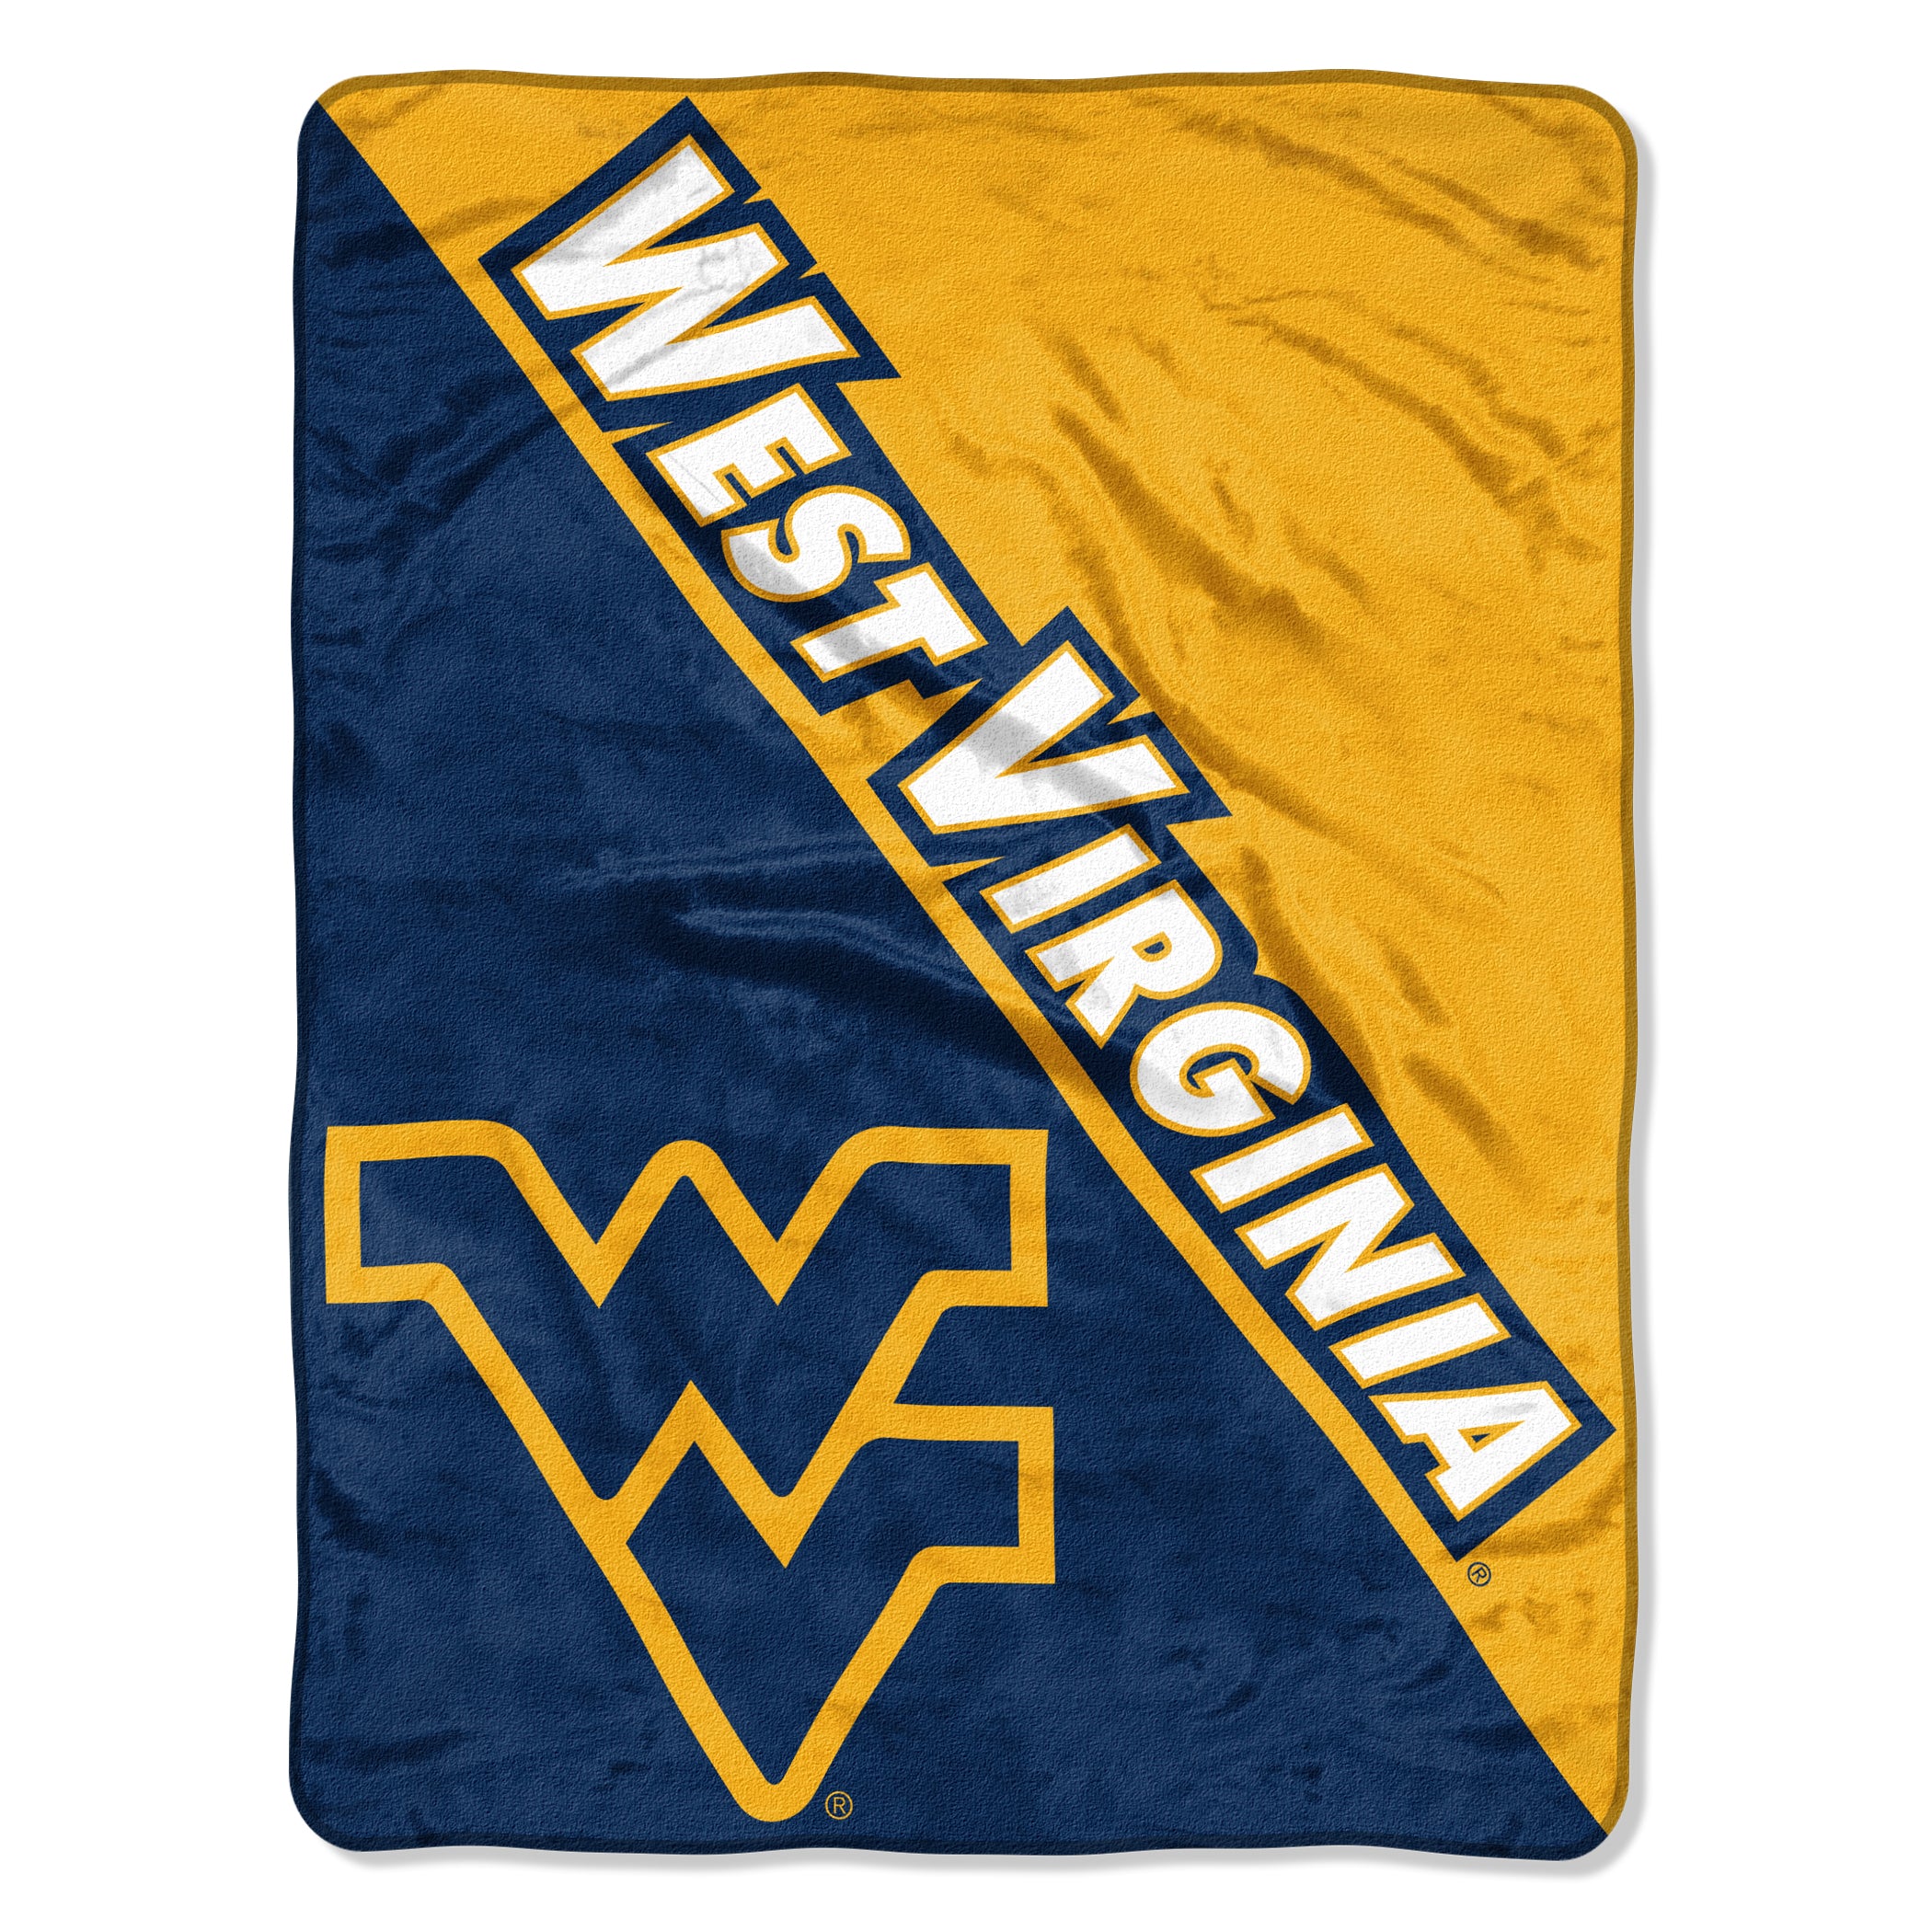 West Virginia Mountaineers Blanket 46x60 Micro Raschel Halftone Design Rolled